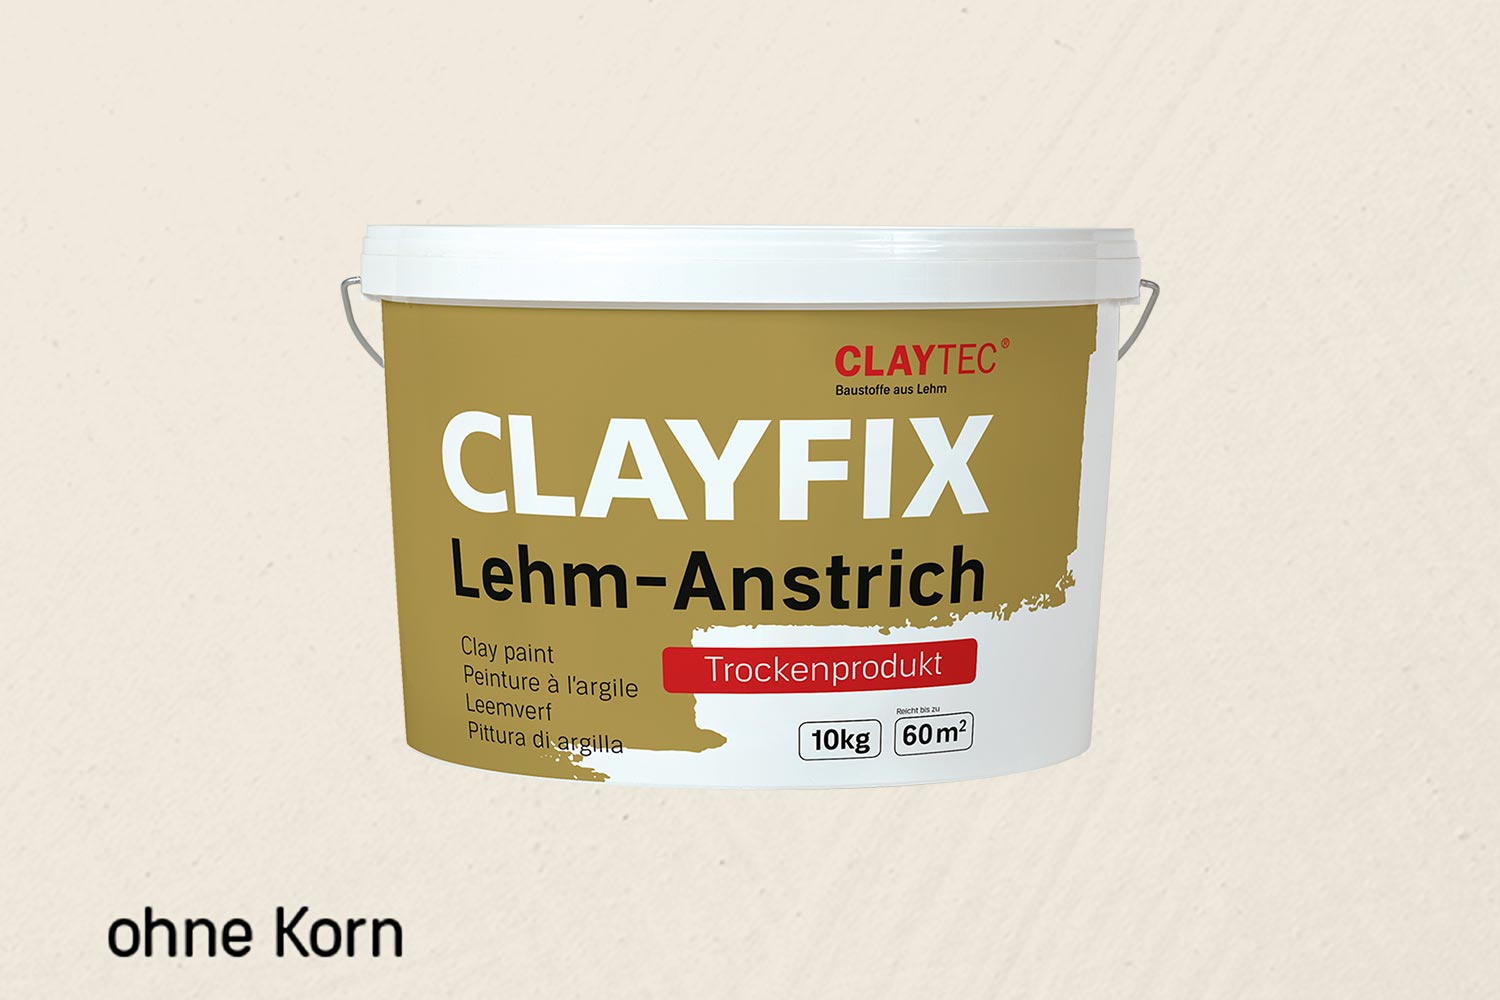 Claytec Clayfix Lehm-Anstrich ohne Korn